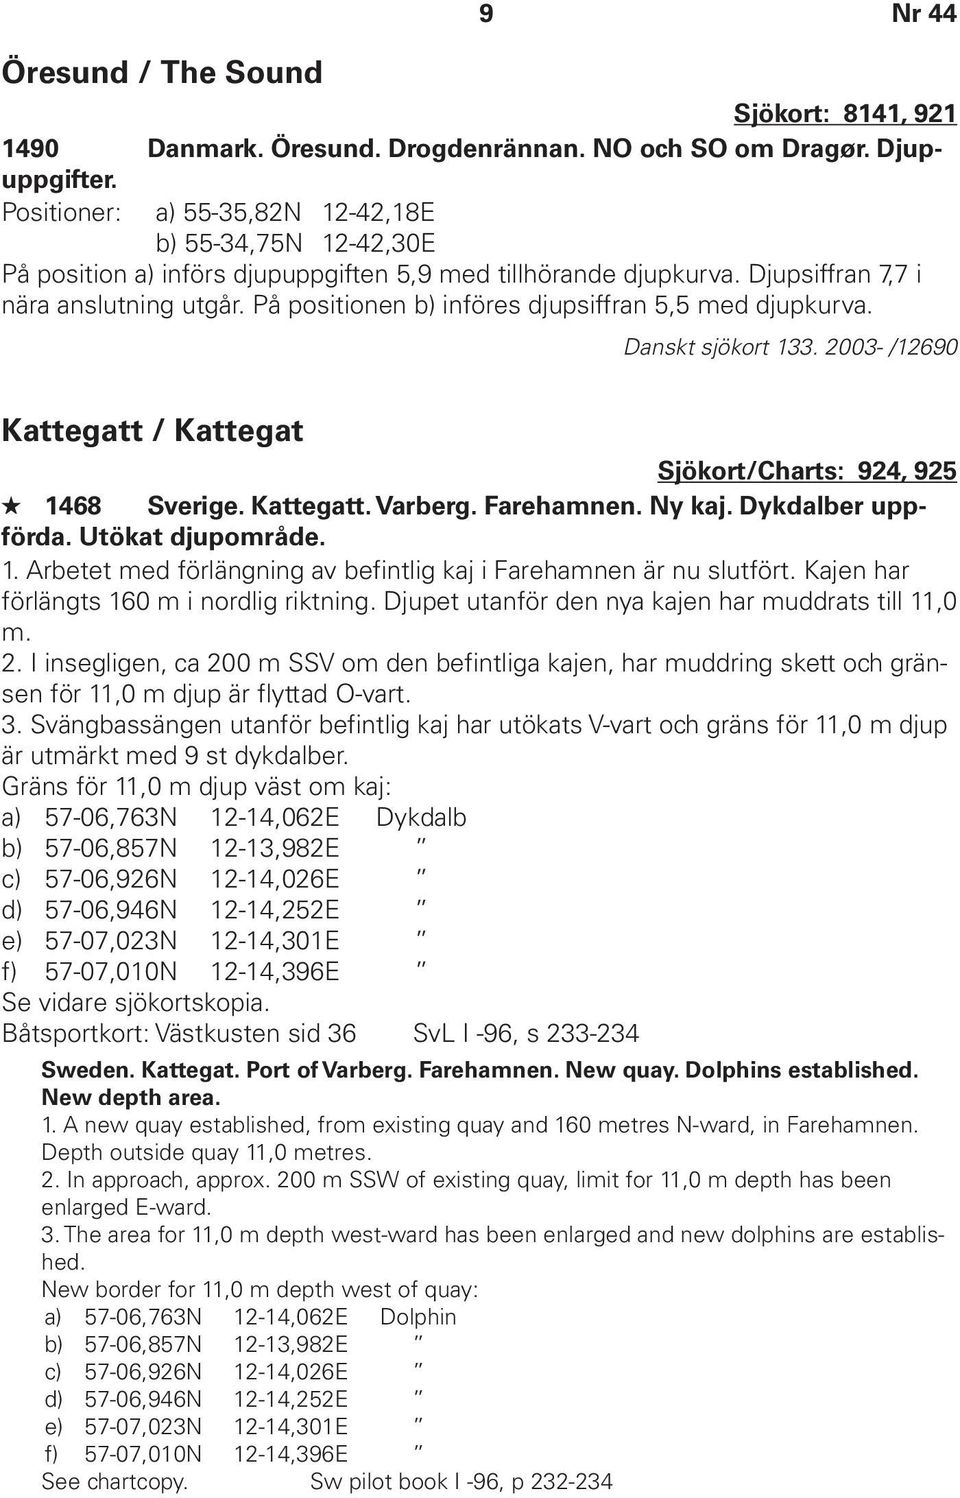 På positionen b) införes djupsiffran 5,5 med djupkurva. Danskt sjökort 133. 2003- /12690 Kattegatt / Kattegat Sjökort/Charts: 924, 925 1468 Sverige. Kattegatt. Varberg. Farehamnen. Ny kaj.